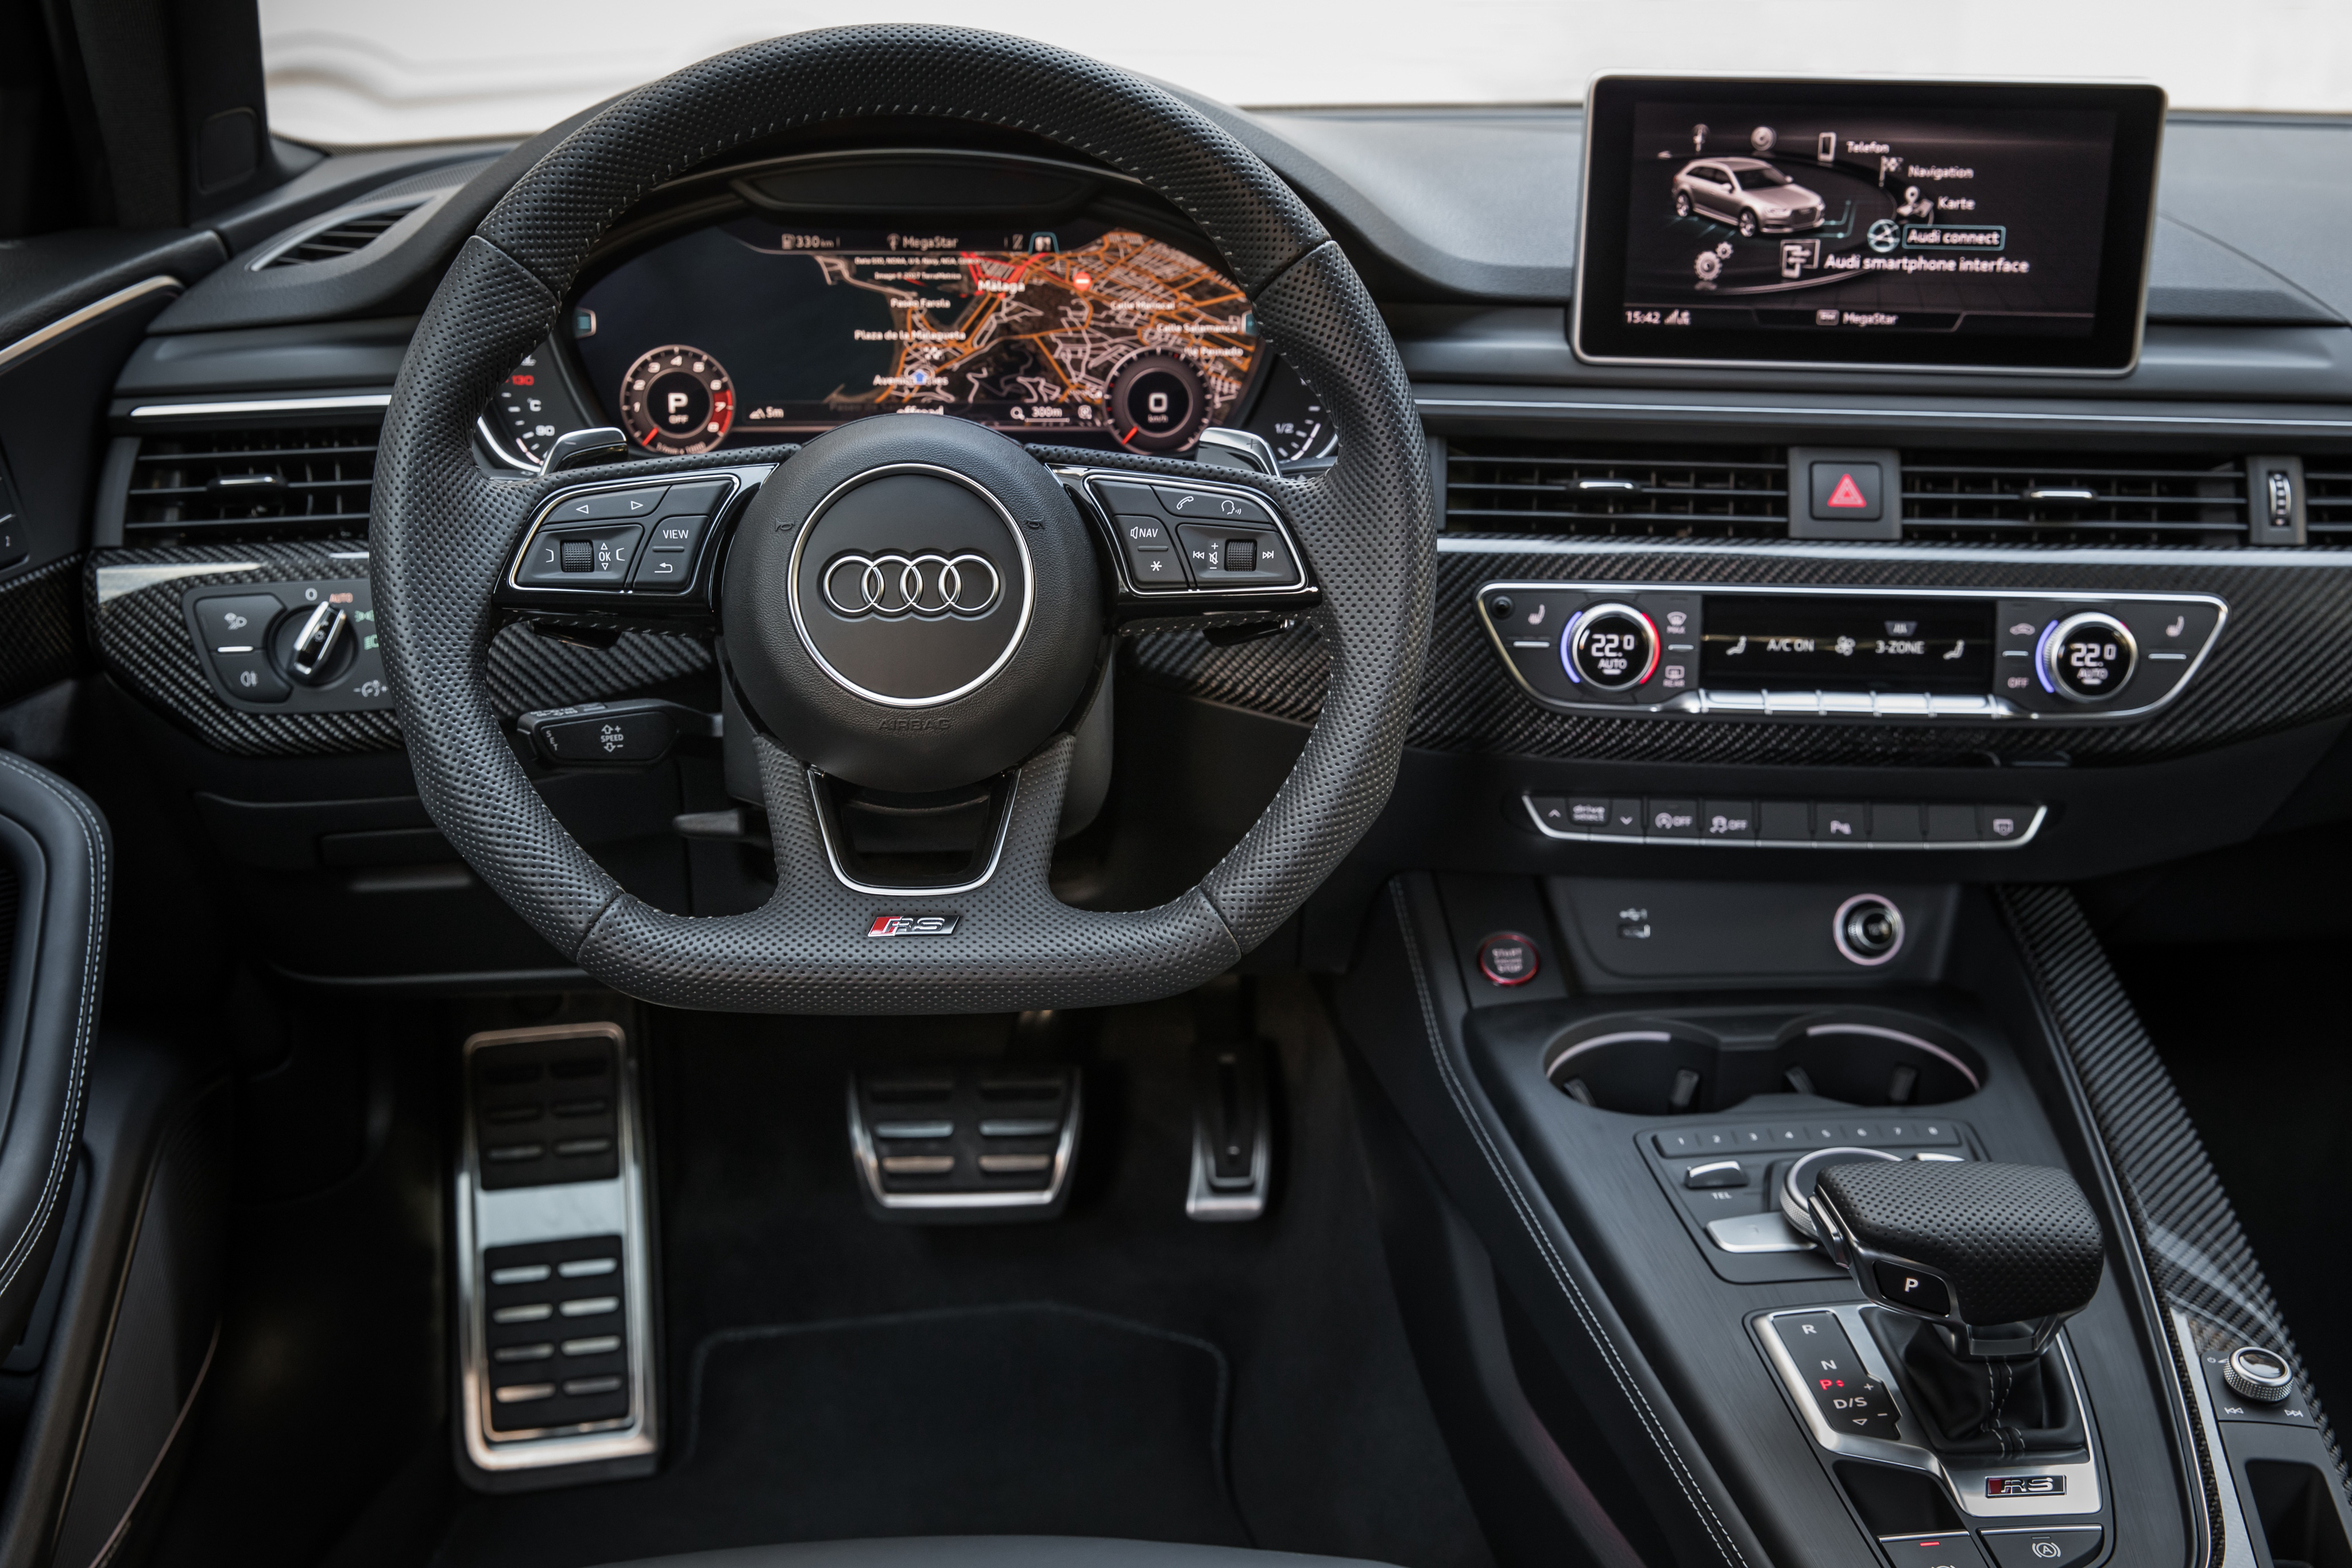 Audi RS4 avant with HQ interior 2021 3D model - TurboSquid 1732294